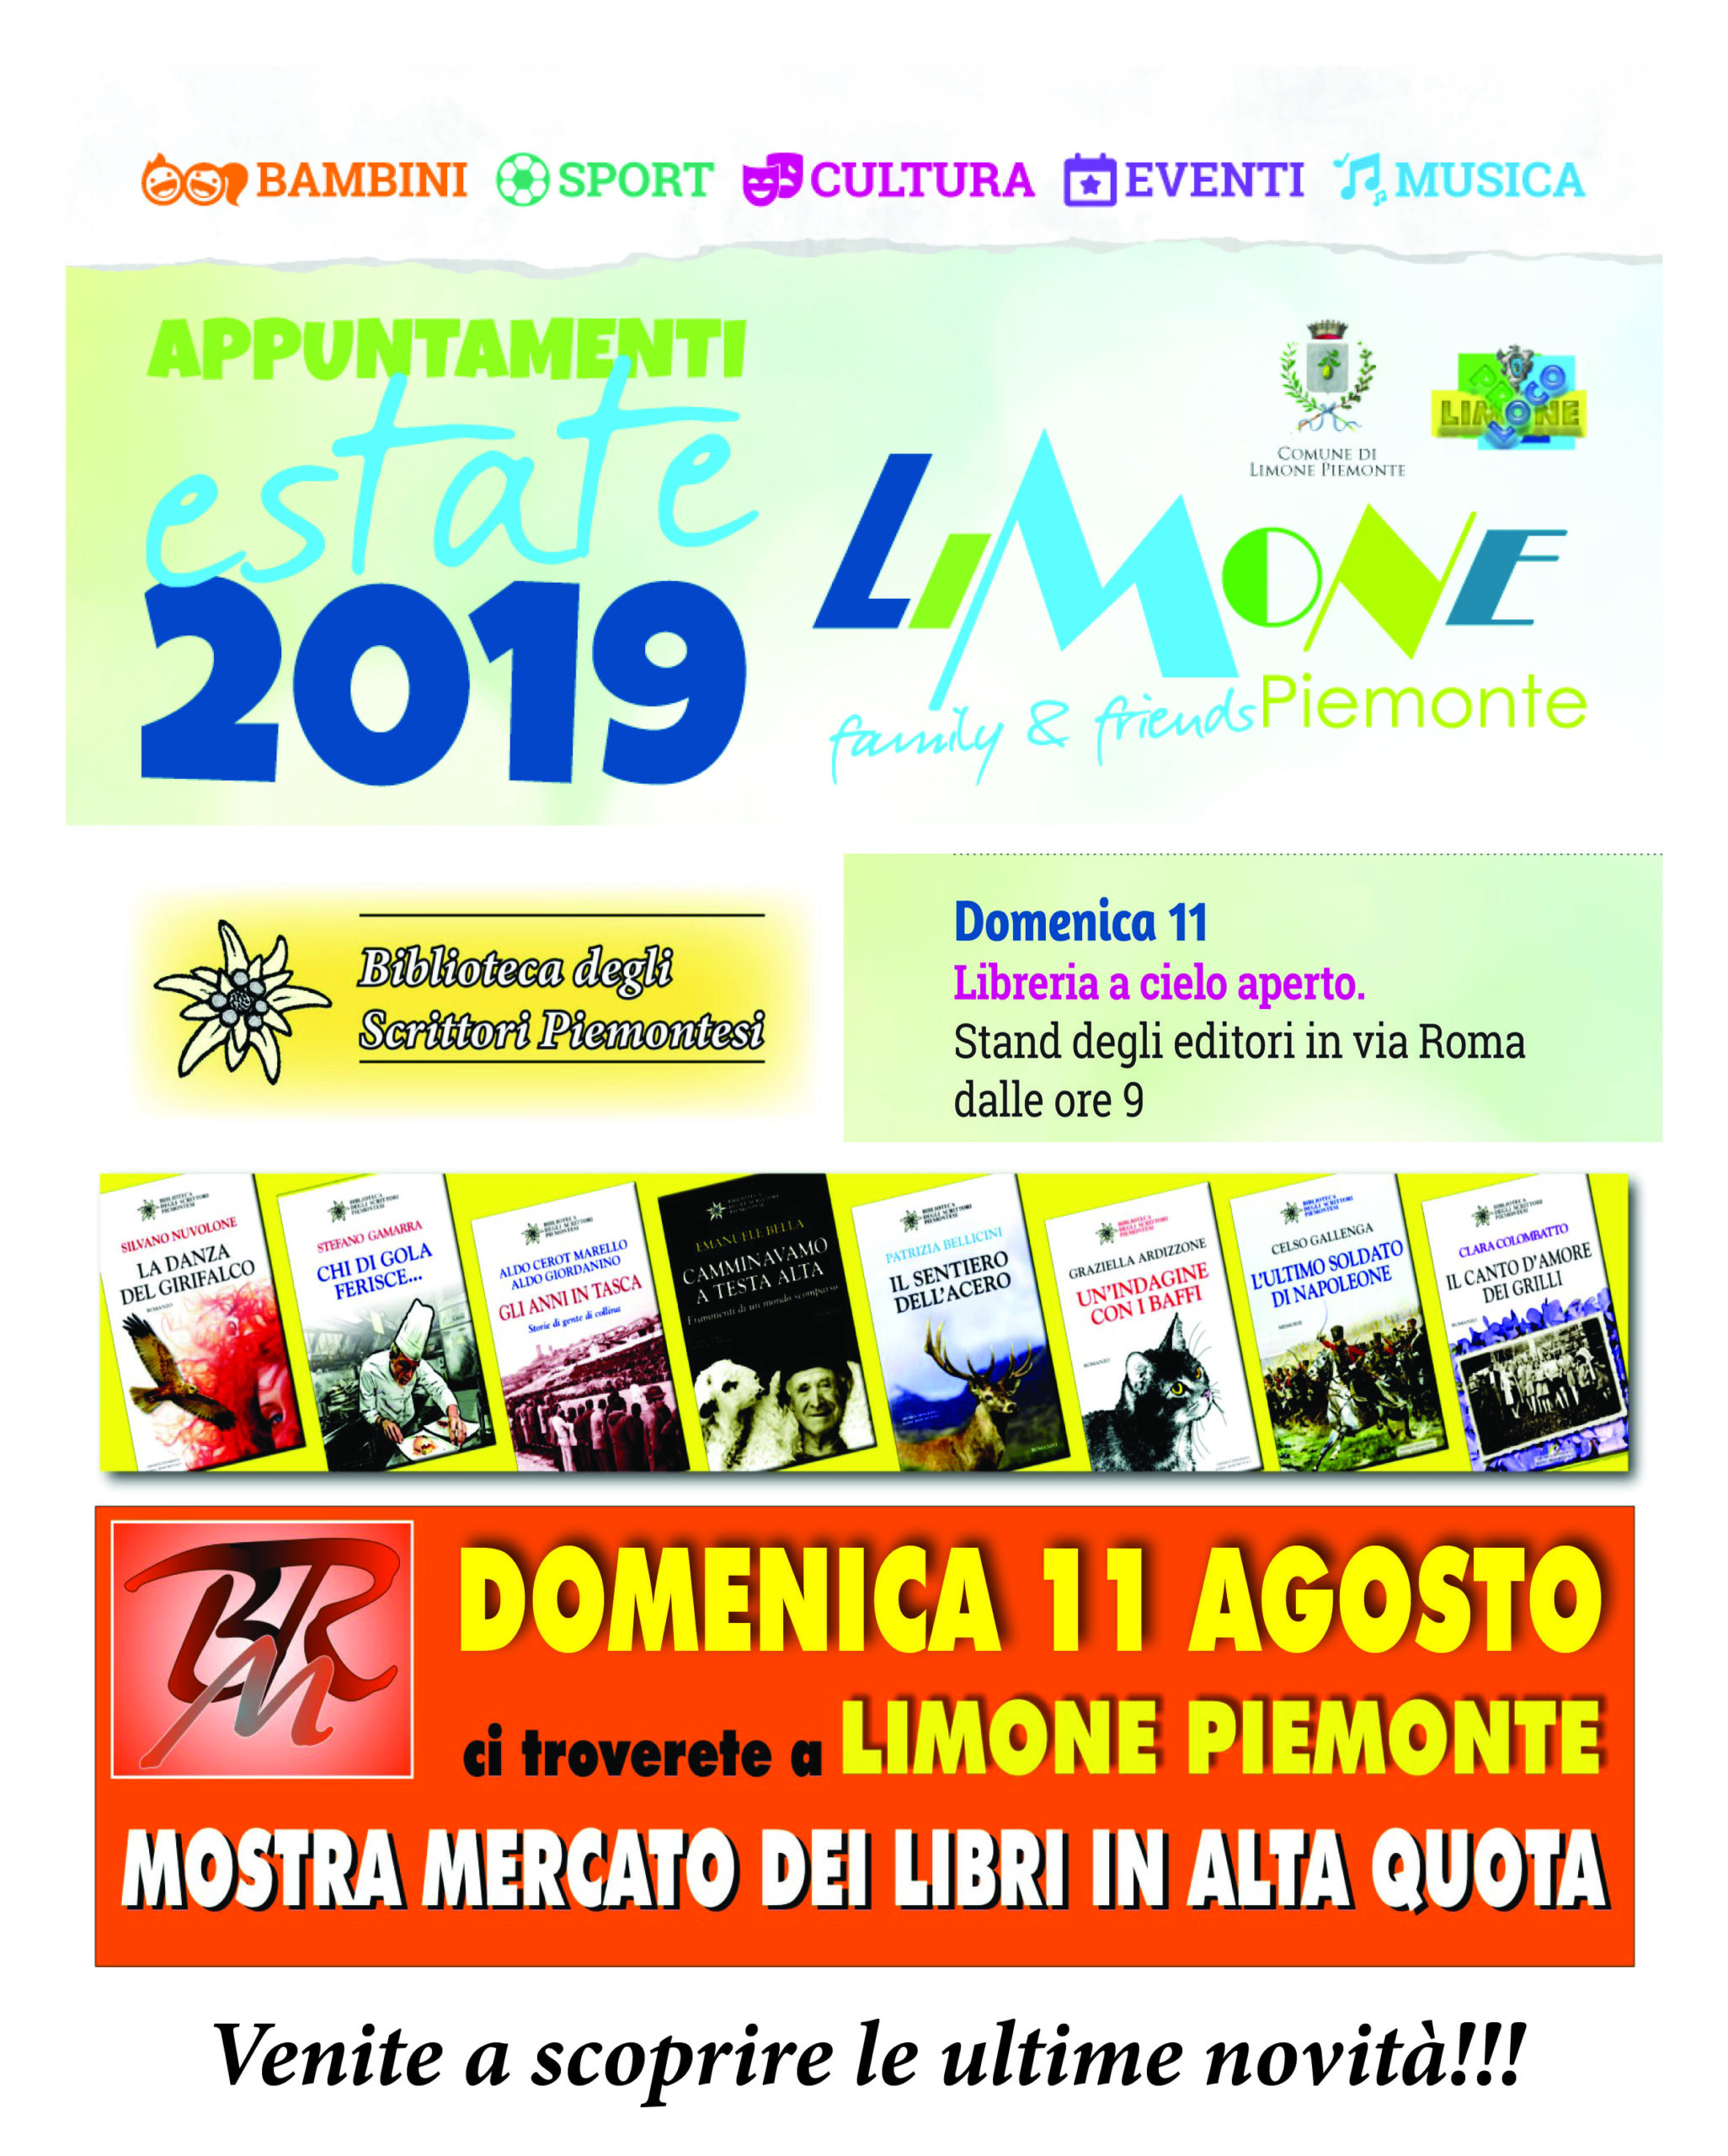 DOMENICA 11 AGOSTO 2019 LIMONE PIEMONTE